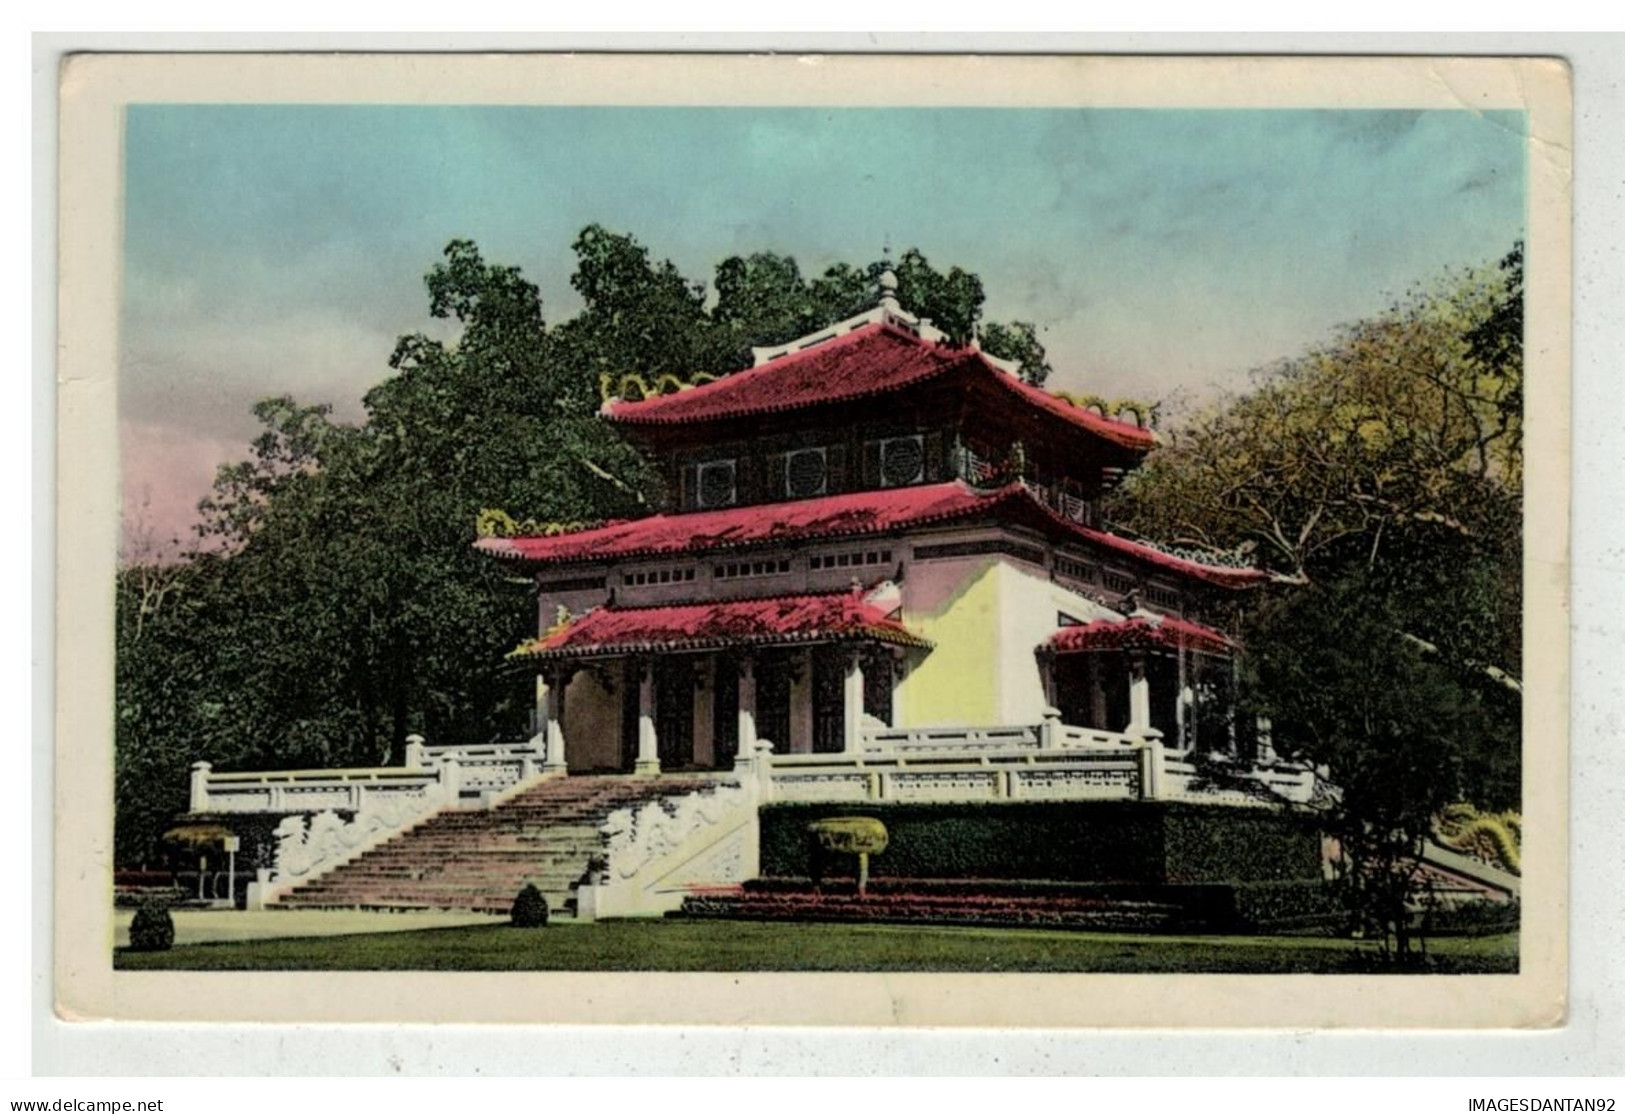 TONKIN INDOCHINE VIETNAM SAIGON #18677 SAIGON TEMPLE DU SOUVENIR - Vietnam